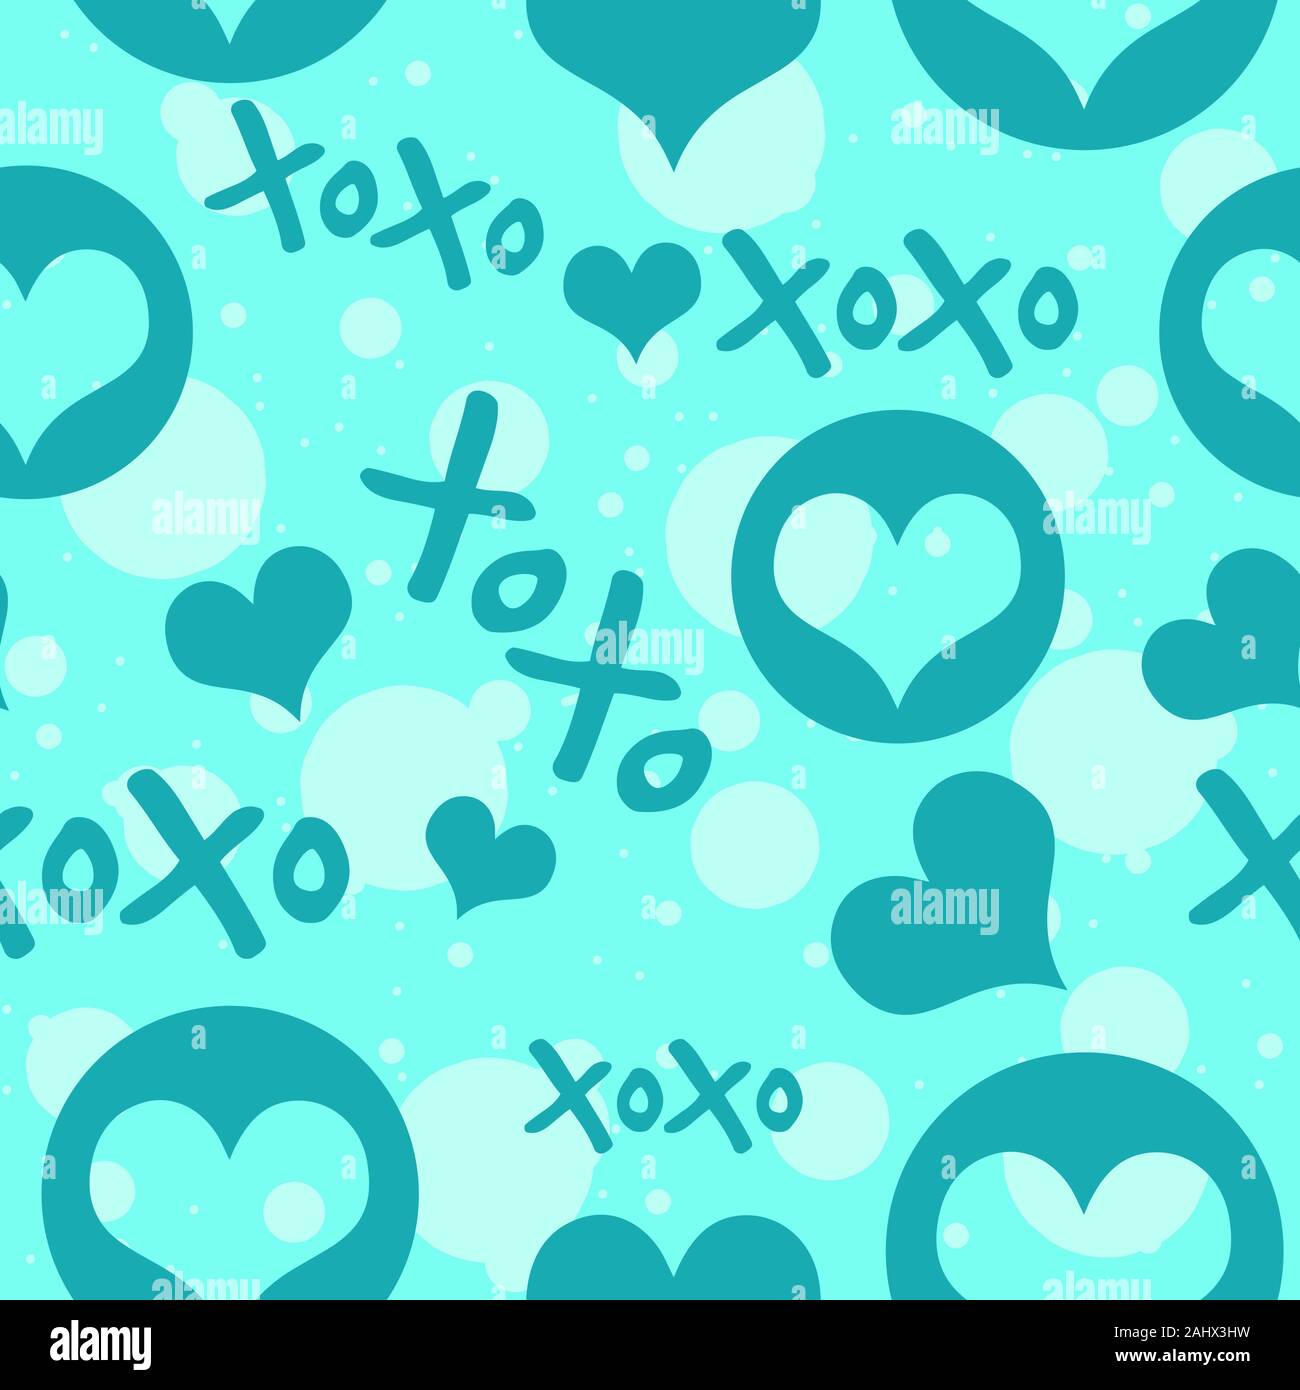 Cuore blu e testo Xoxo con cerchi, seamless pattern. Sfondo ripetitiva per il giorno di San Valentino. Illustrazione Vettoriale